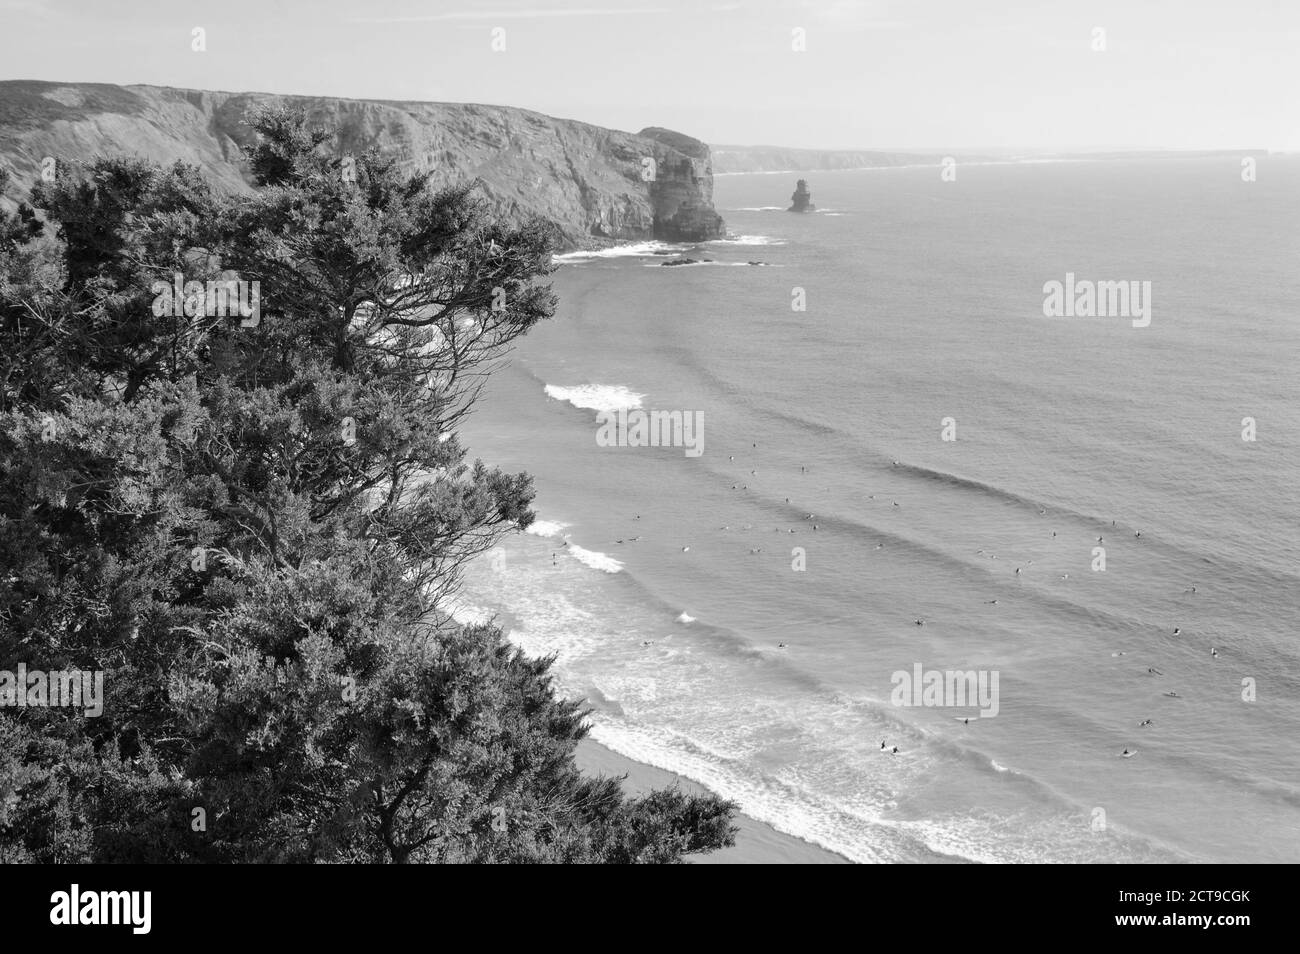 Plage dans la région de l'Algarve au Portugal. Les gens nagent et surfent. Une vue du dessus. Accent sélectif sur les pins au premier plan. Photo vieillie Banque D'Images